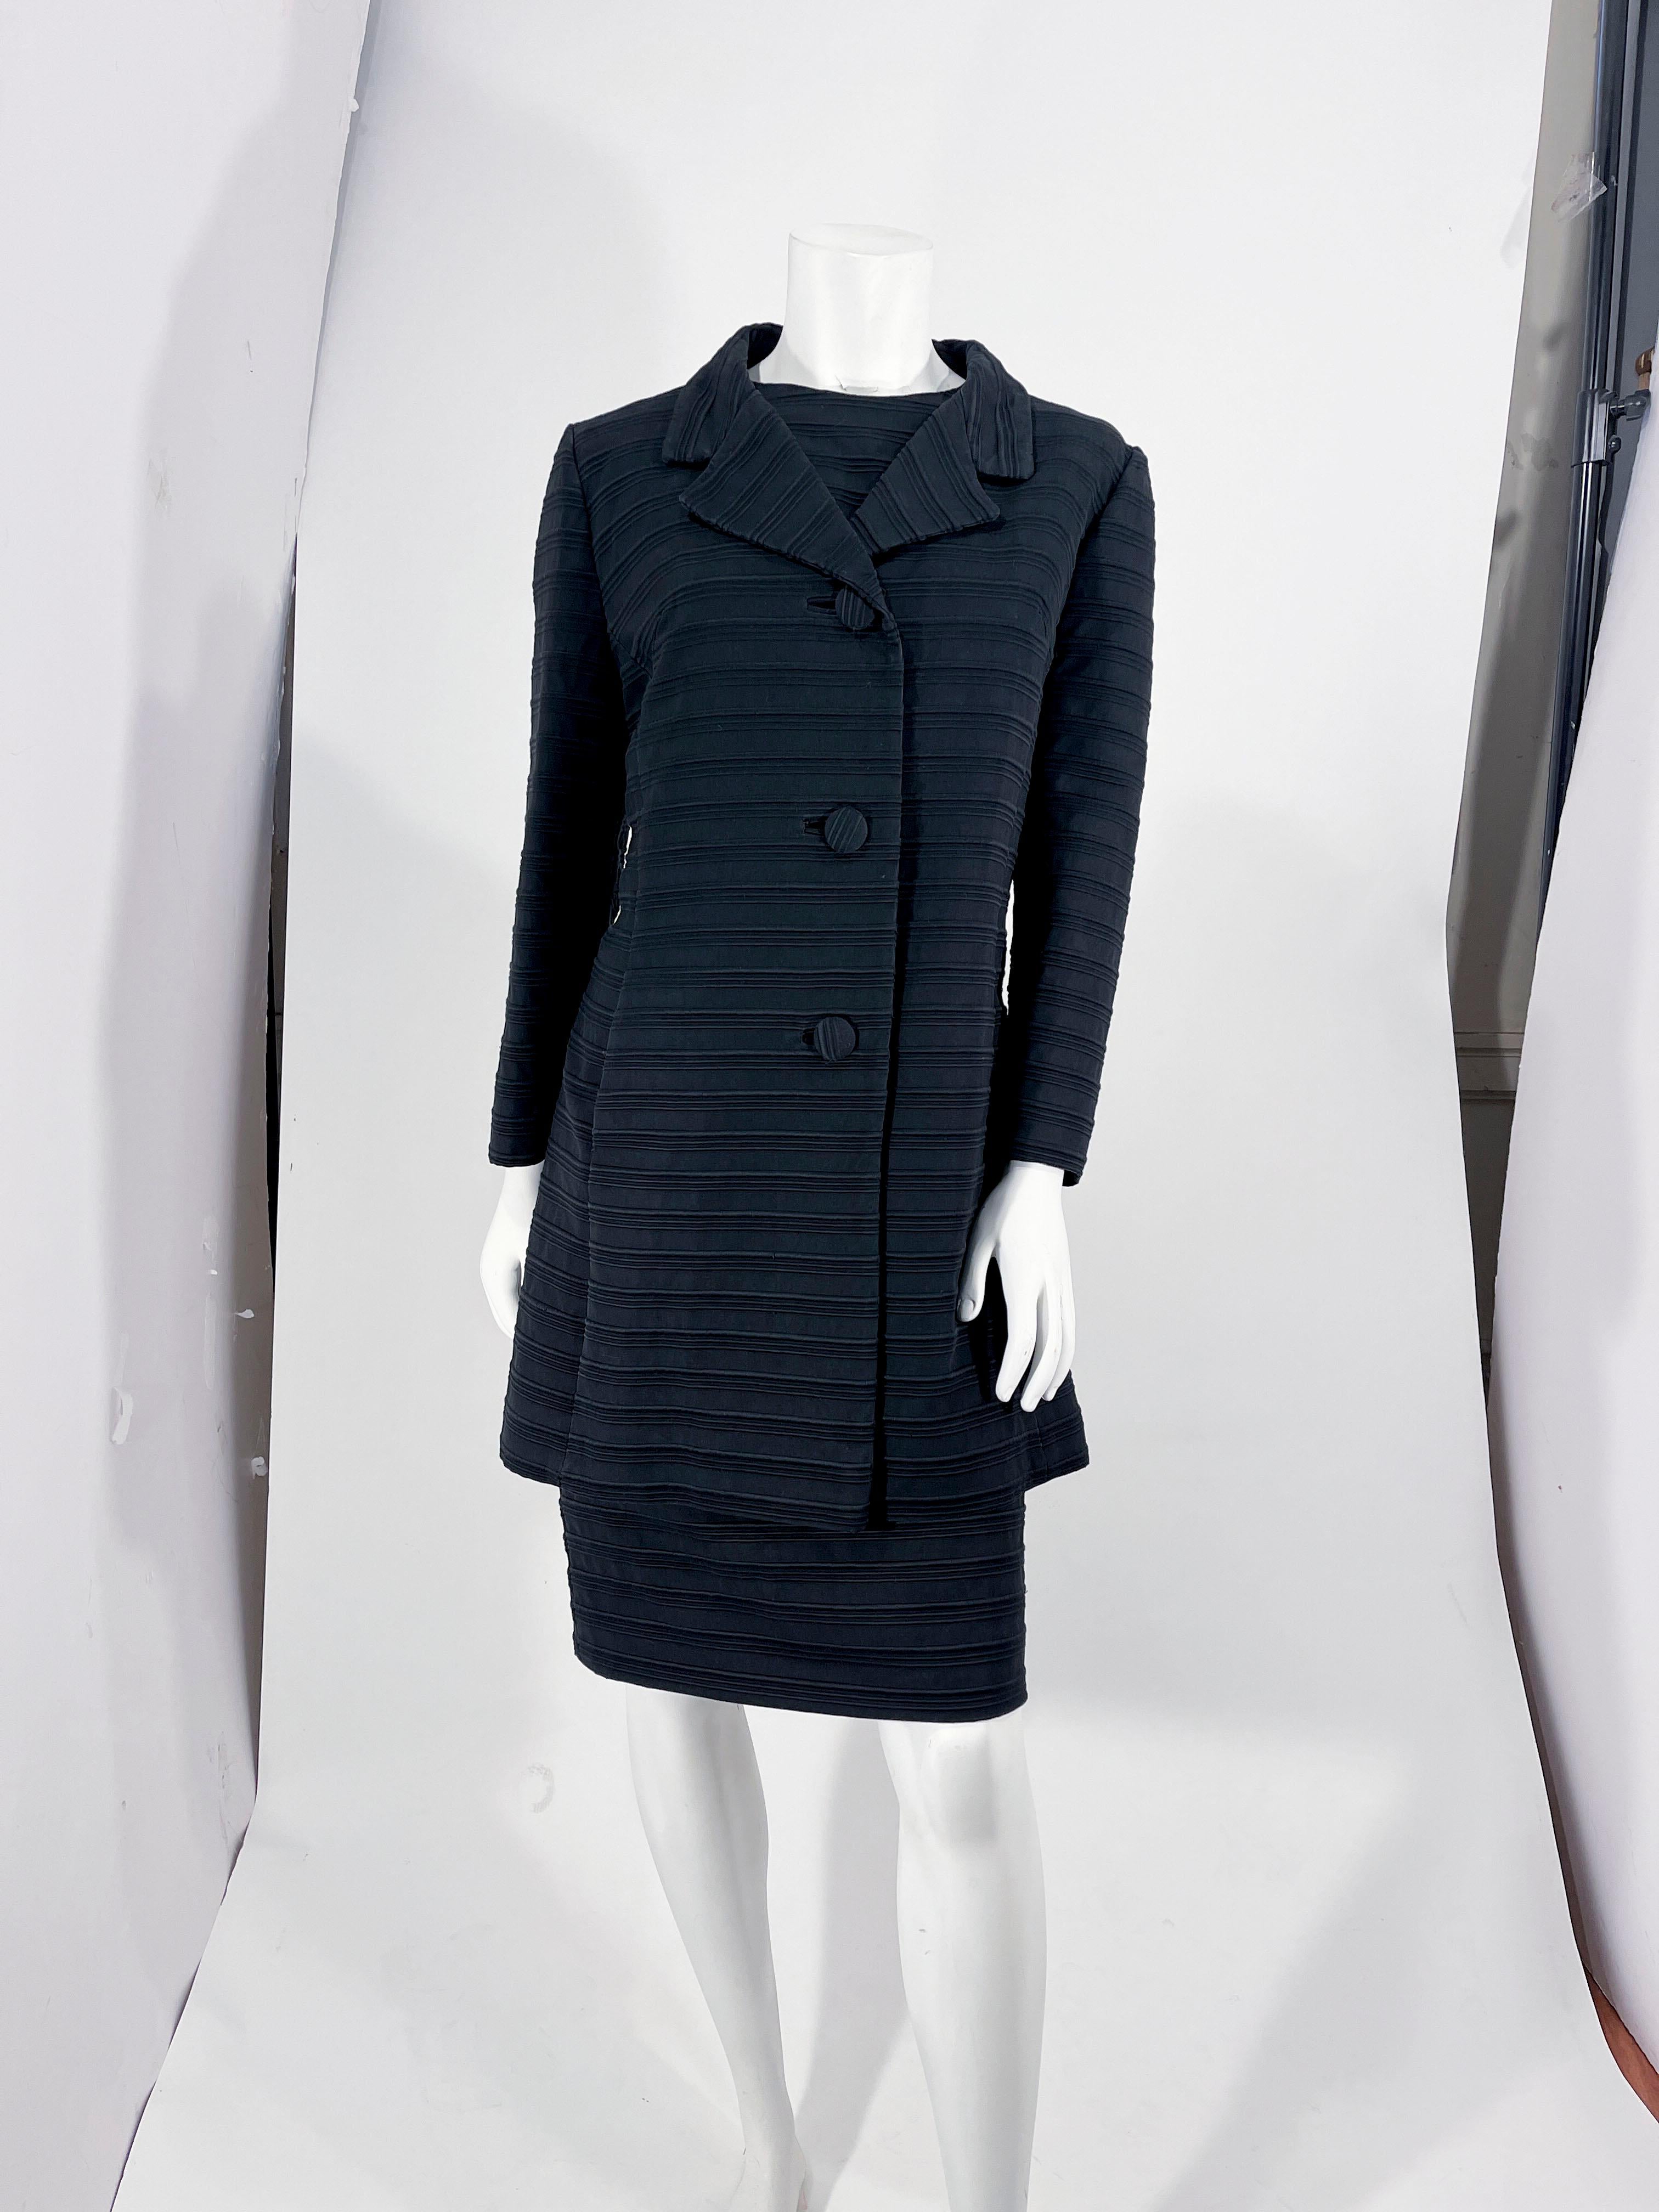 1960er Jahre Lilli Ann schwarzes strukturiertes Kleid und Mantel Ensemble. Das ärmellose Etuikleid hat einen hohen Rundhalsausschnitt und ist komplett schwarz gefüttert. Die Rückseite des Kleides ist mit einem Metallreißverschluss versehen. 

Der